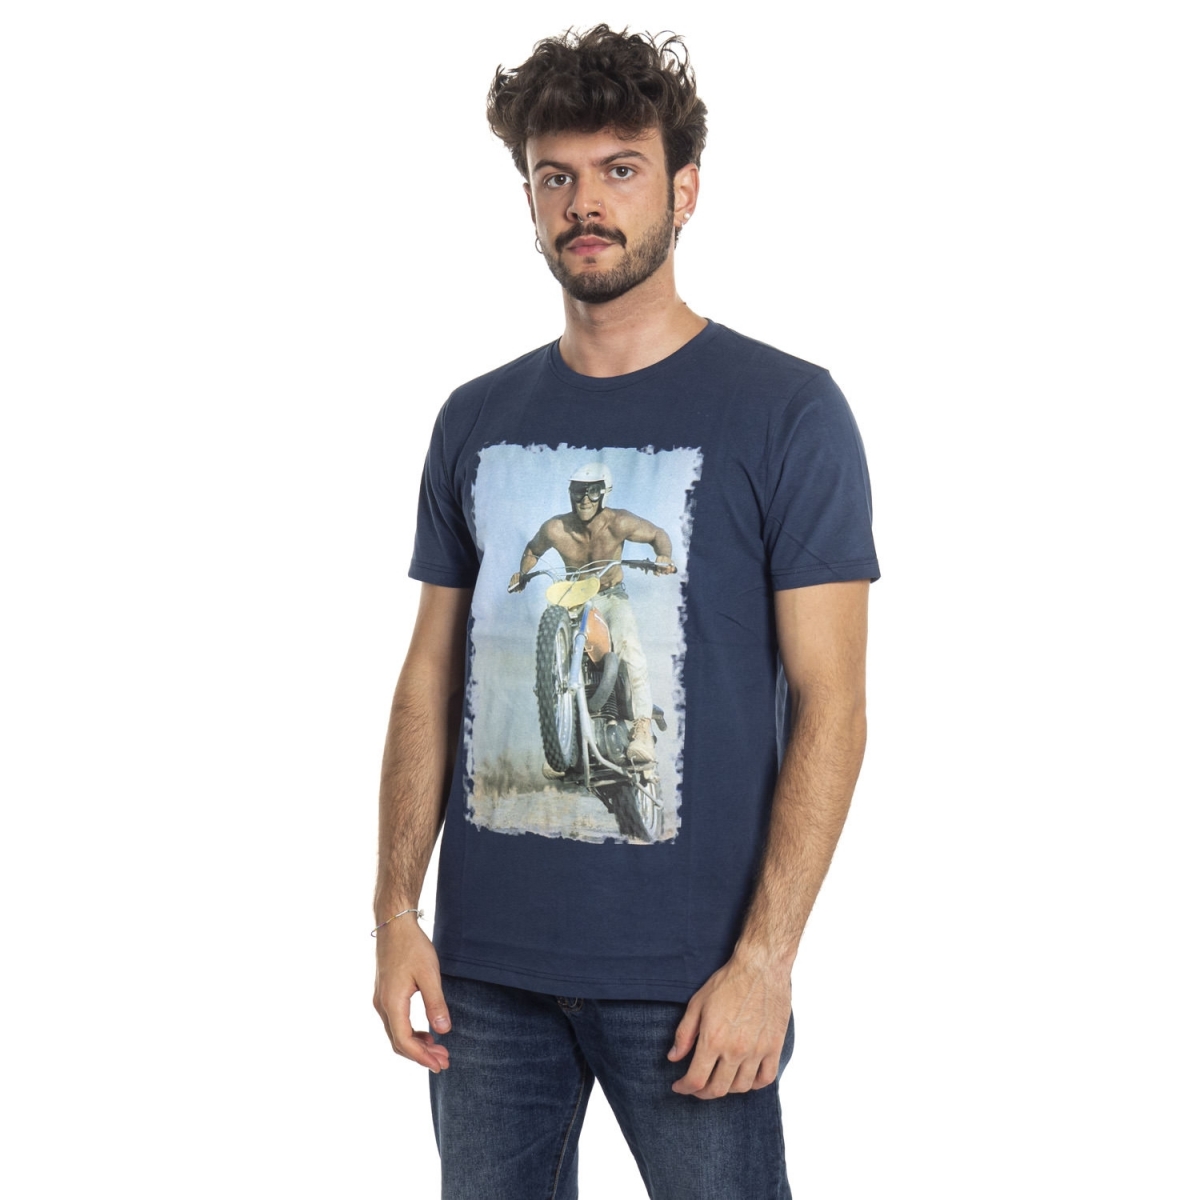 Kleidung T-shirt mann T-Shirt LPX16-38 LANDEK PARK Cafedelmar Shop